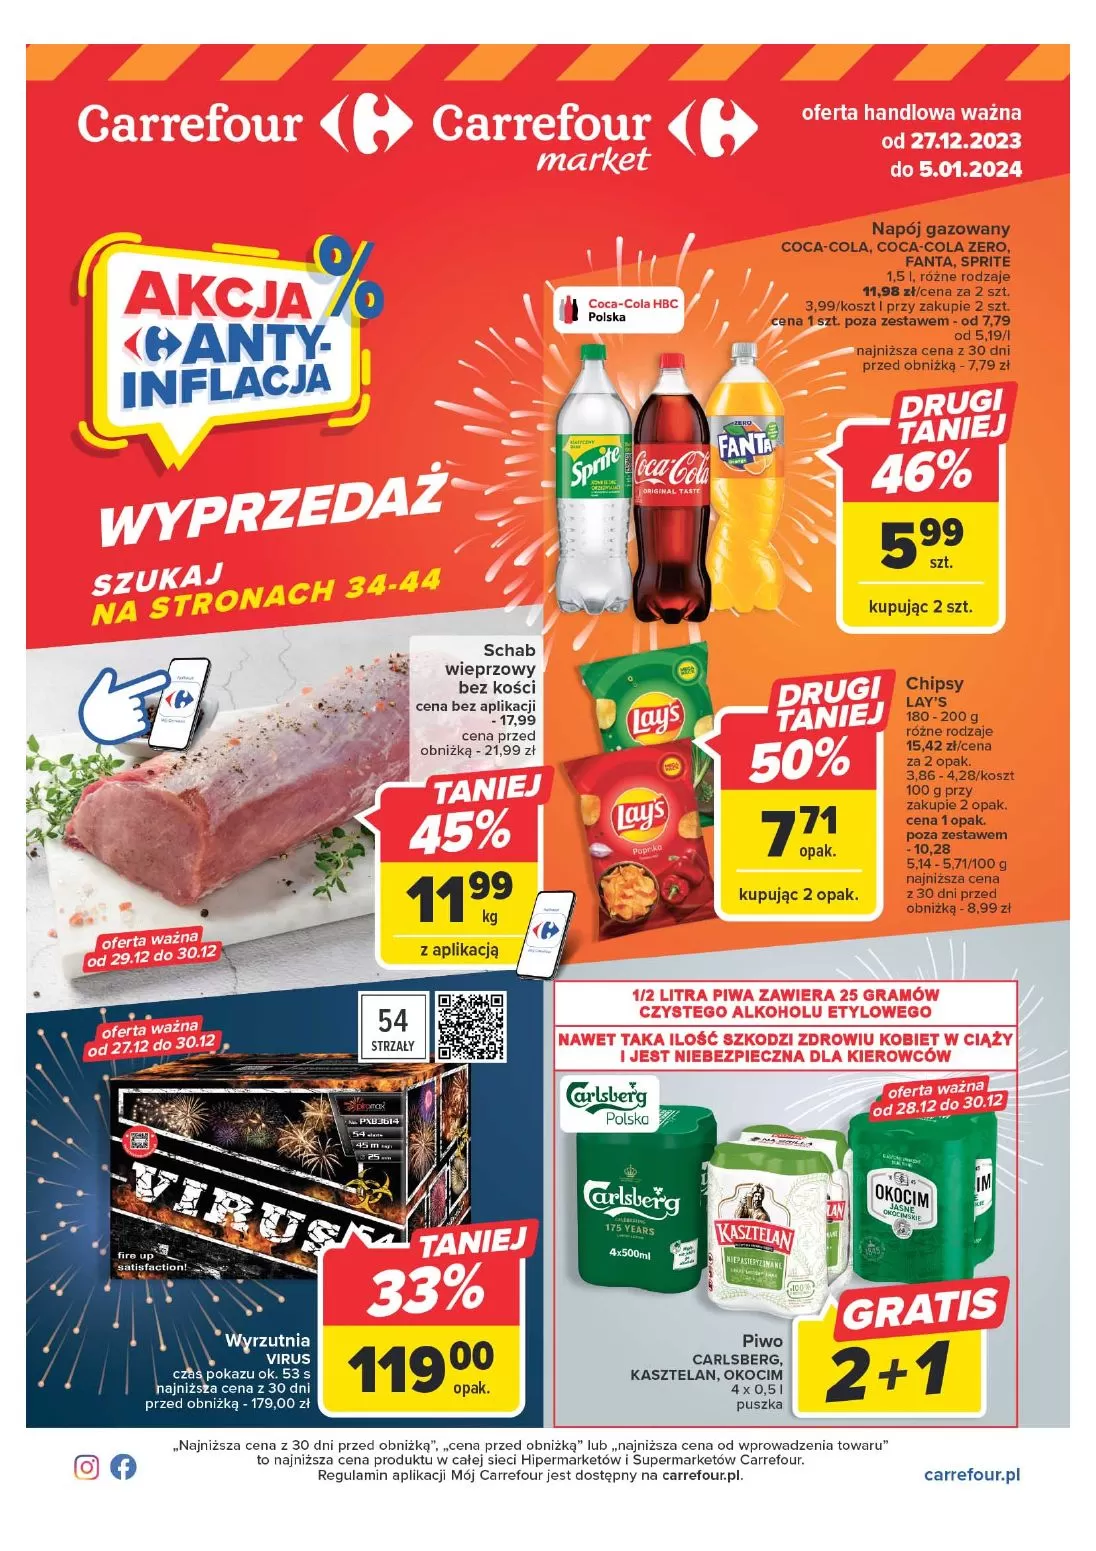 Akcja Anty-Inflacja - Carrefour Gazetka promocyjna - W tym tygodniu - oferta 'brak'